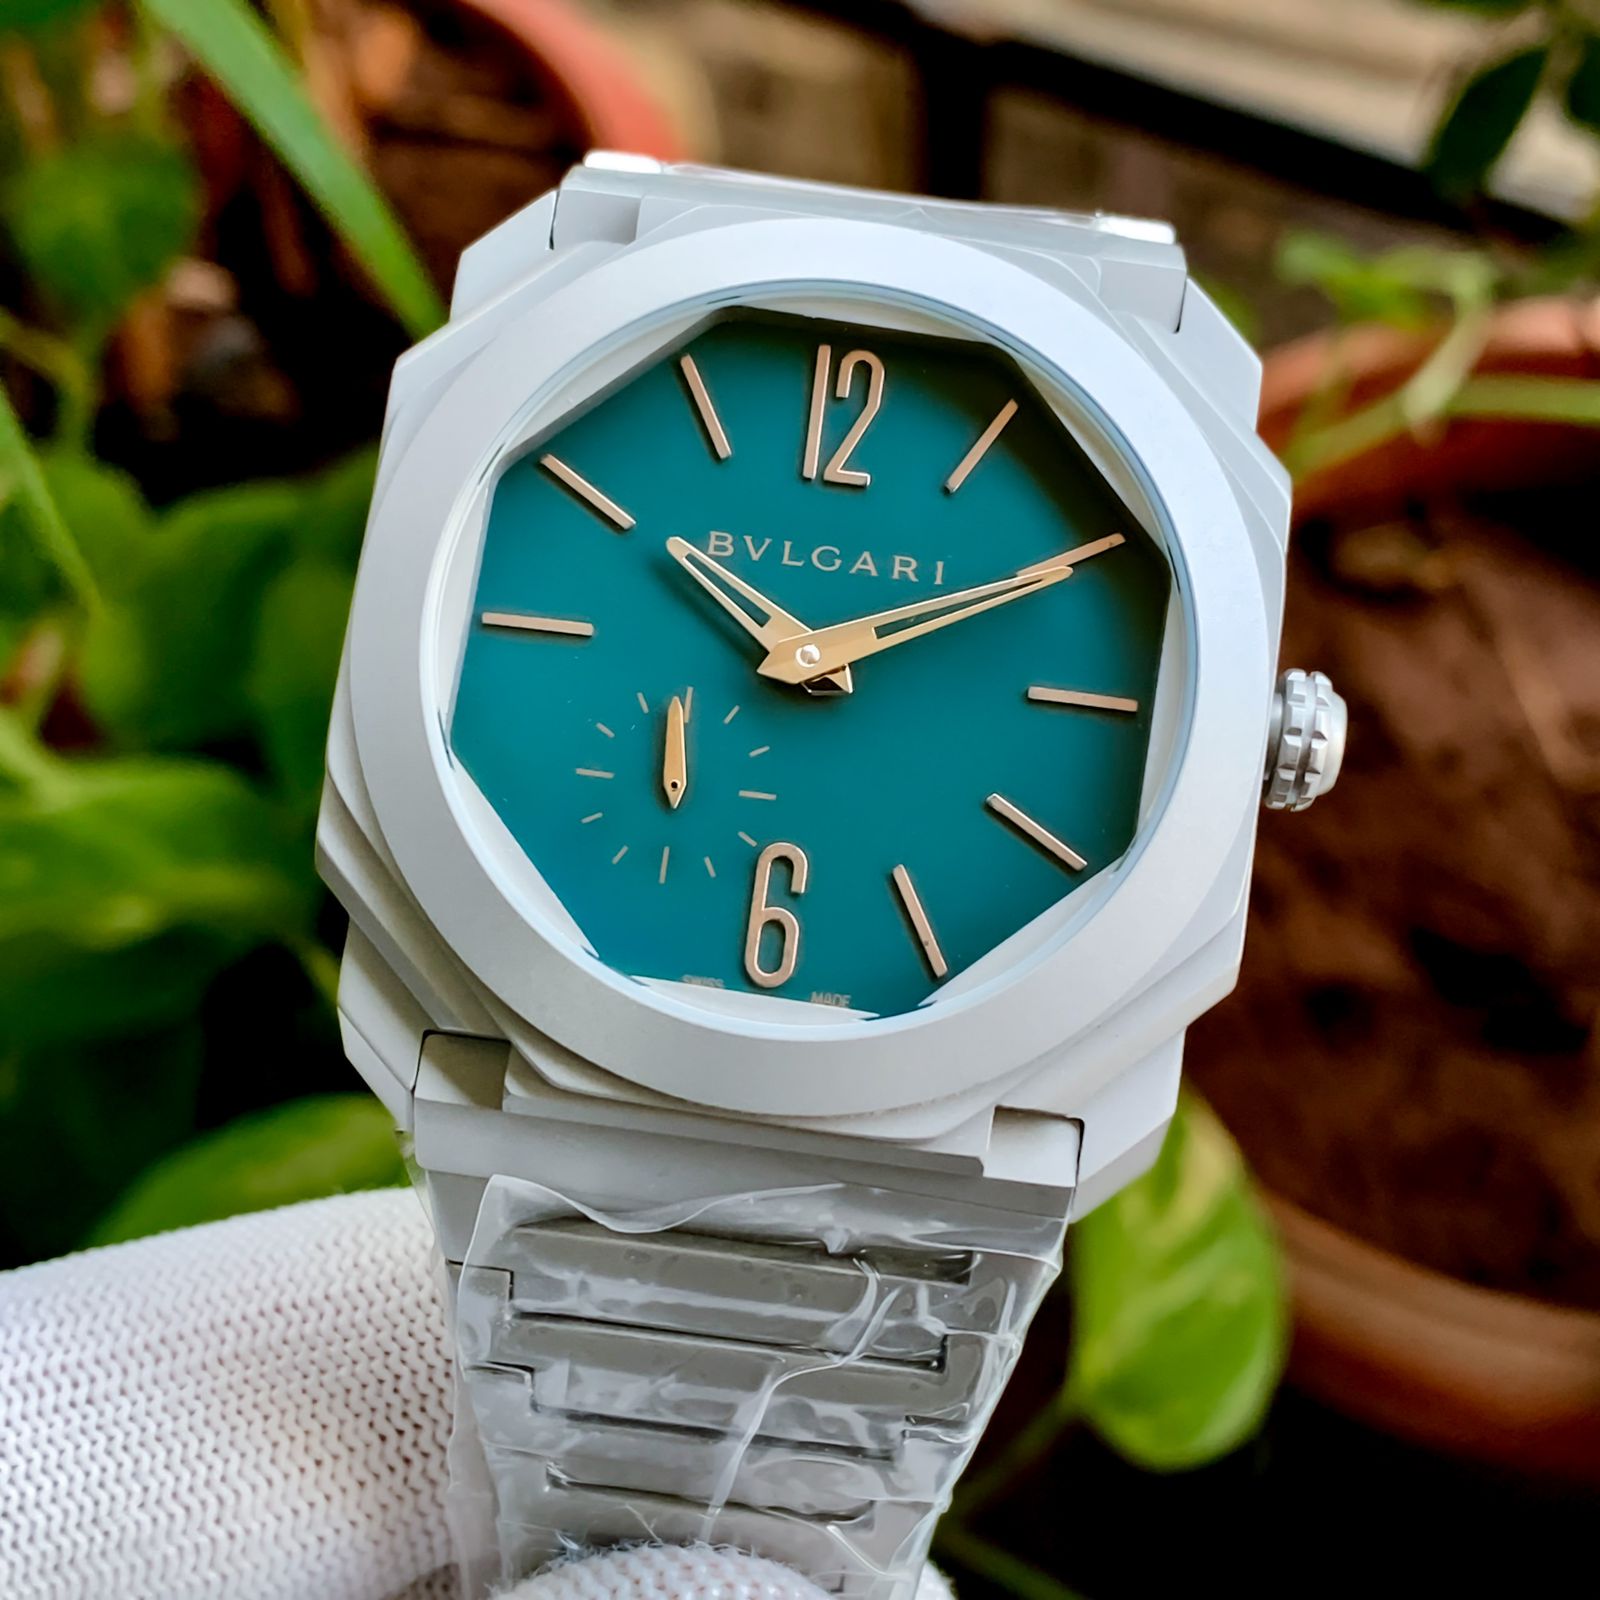 Bgari premium Iconic watch - AmazingBaba